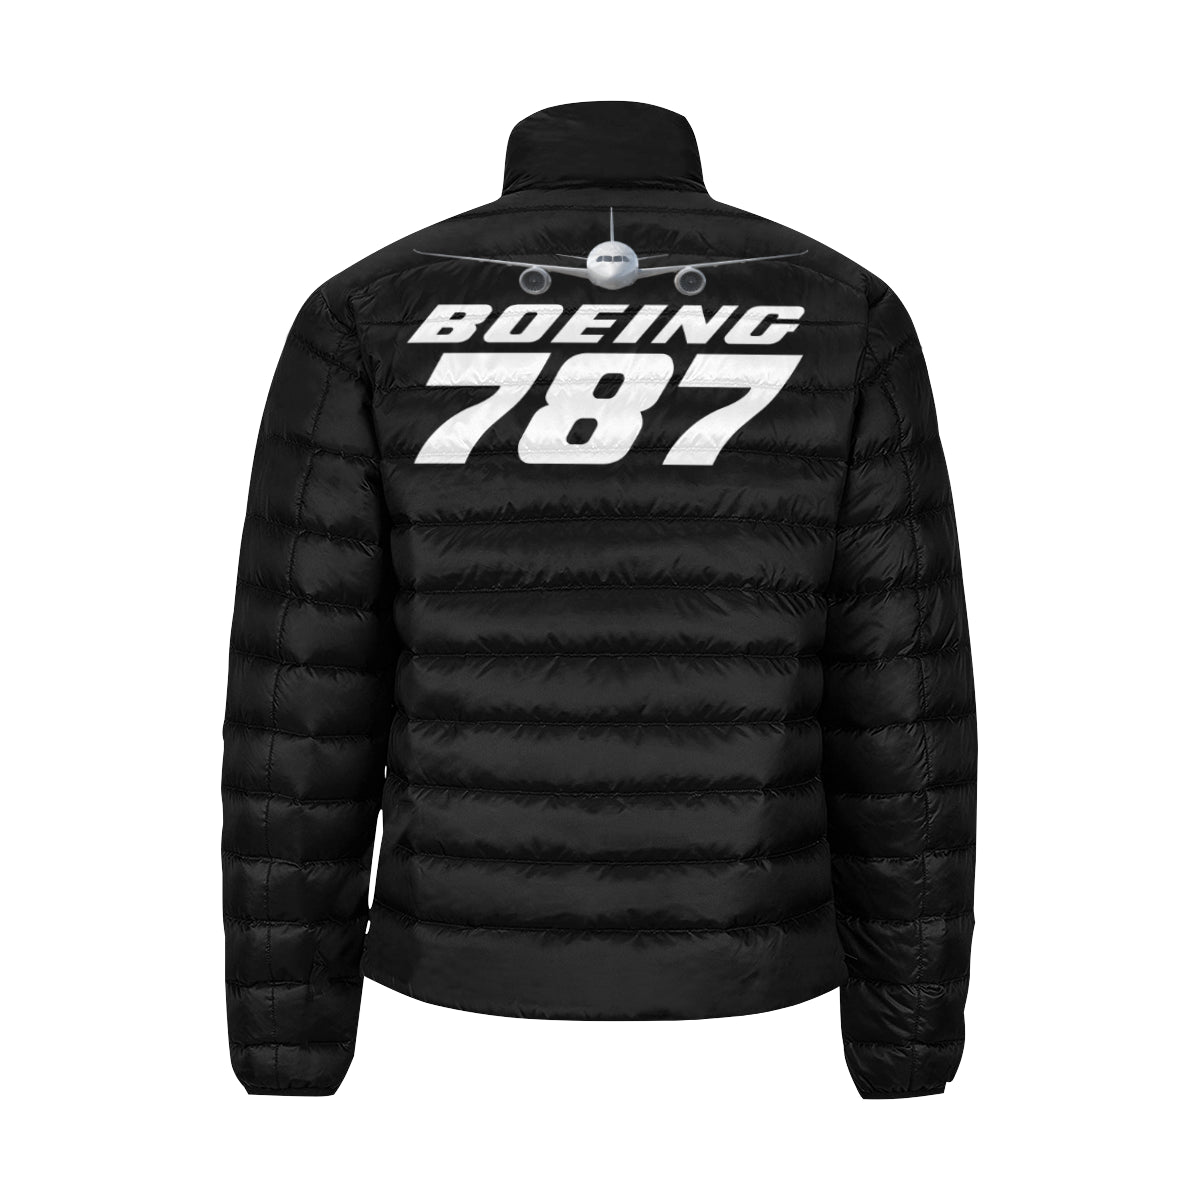 BOEING 787 Men's Stand Collar Padded Jacket e-joyer